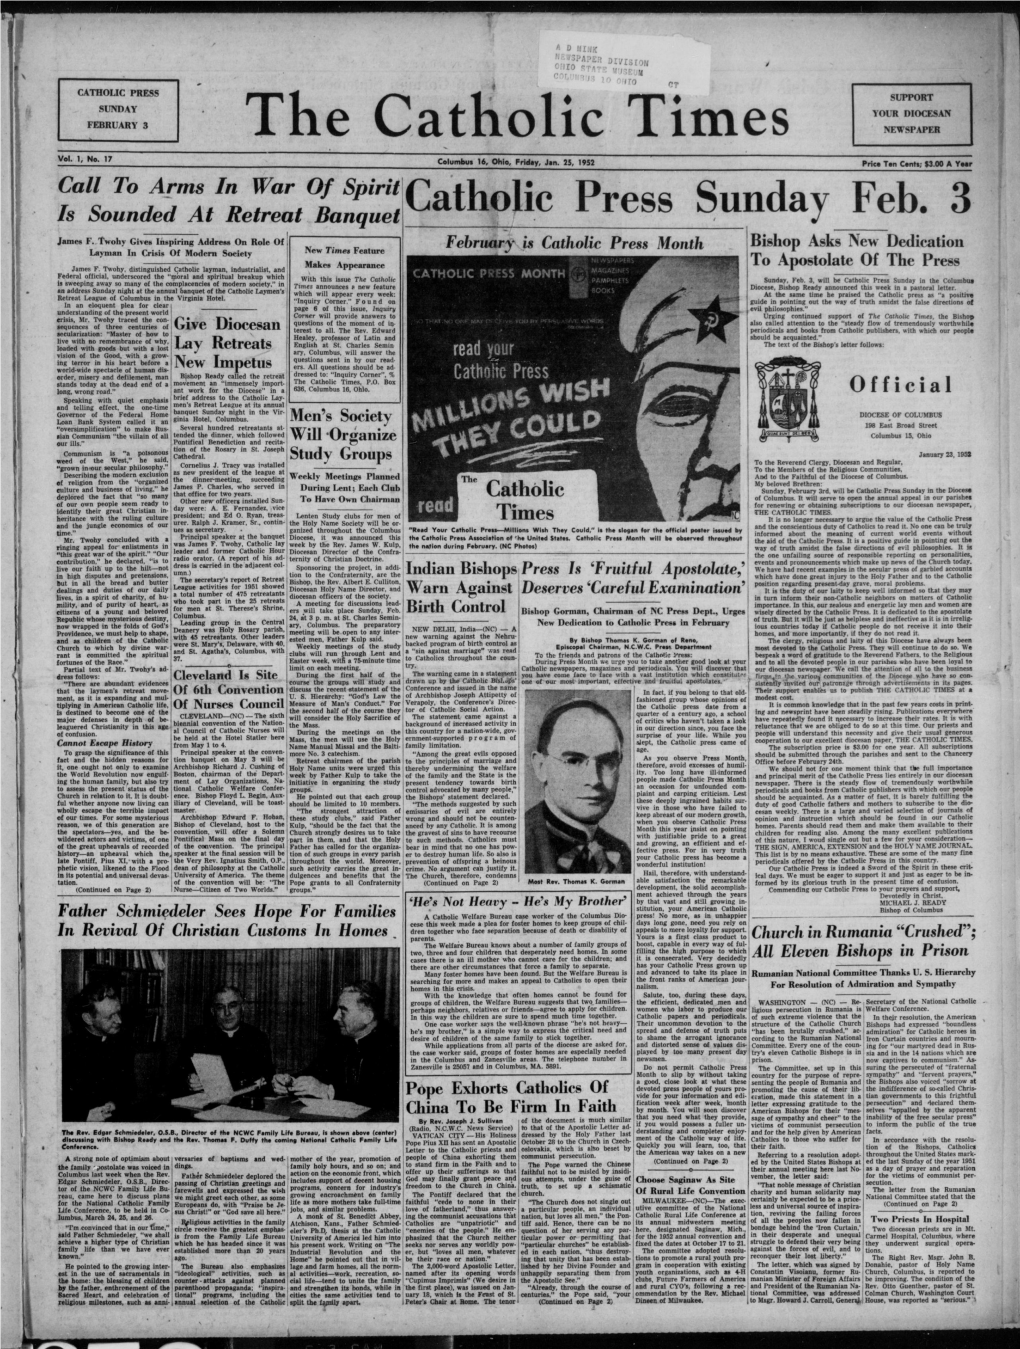 The Catholic Times. (Columbus, Ohio), 1952-01-25